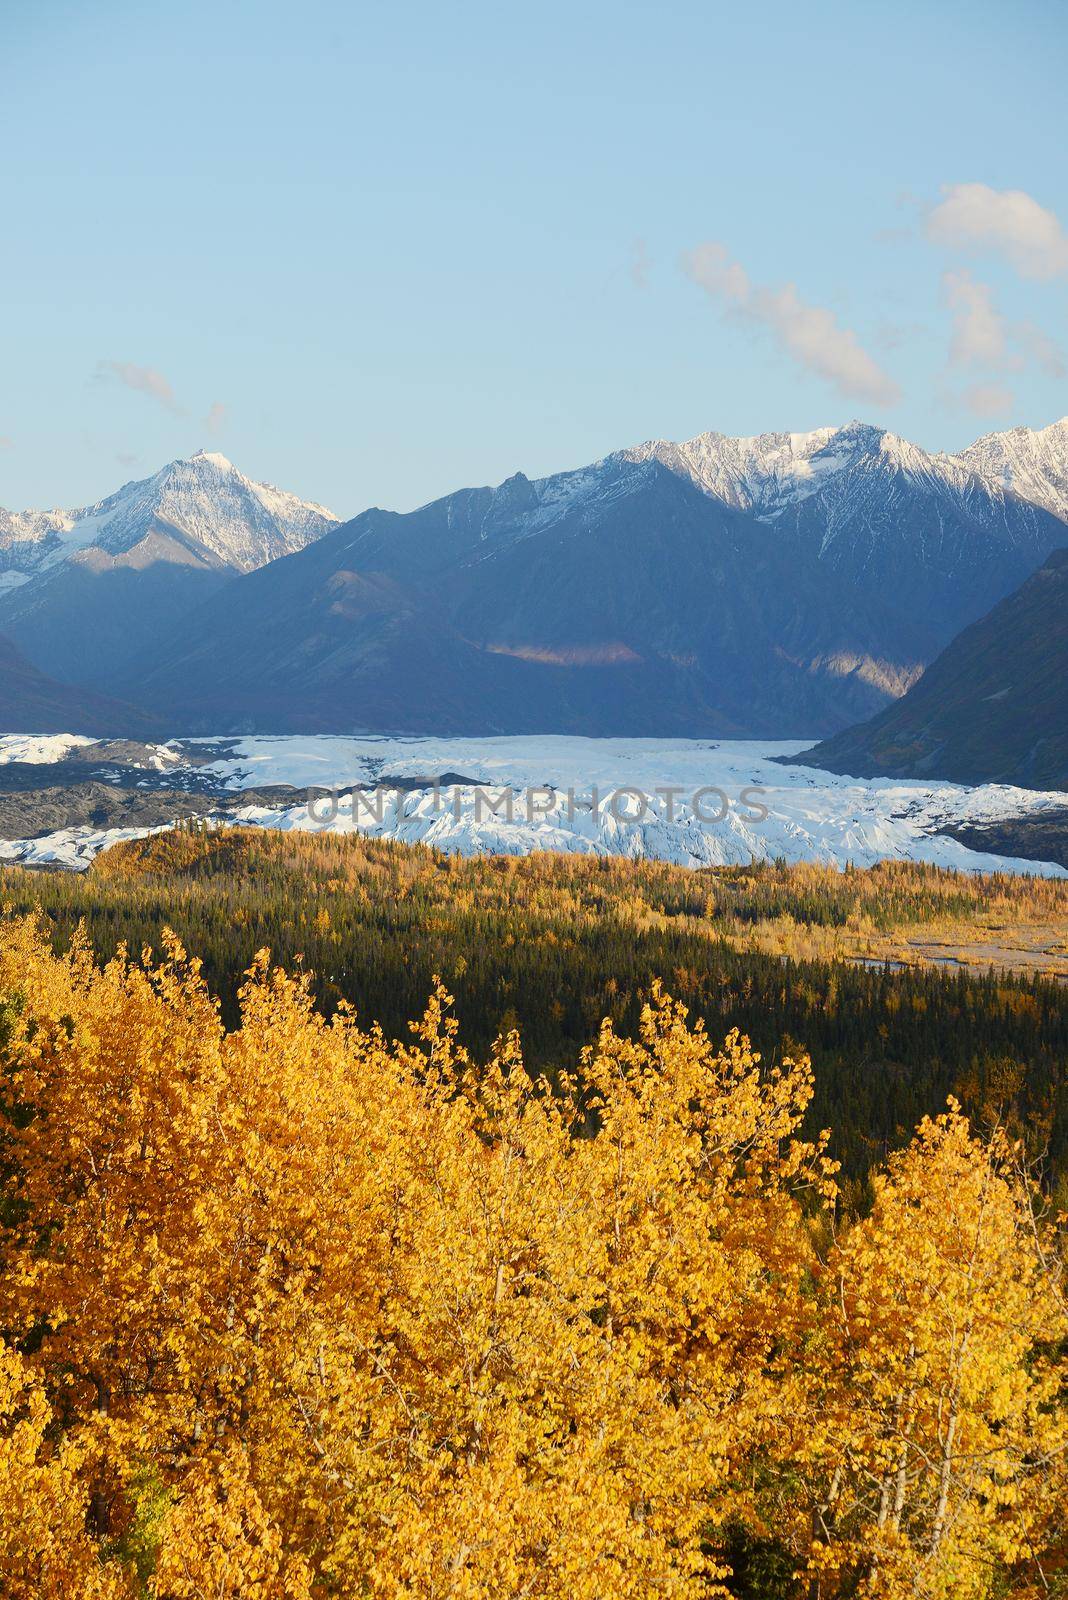 autumn at matanuska glacier in alaska